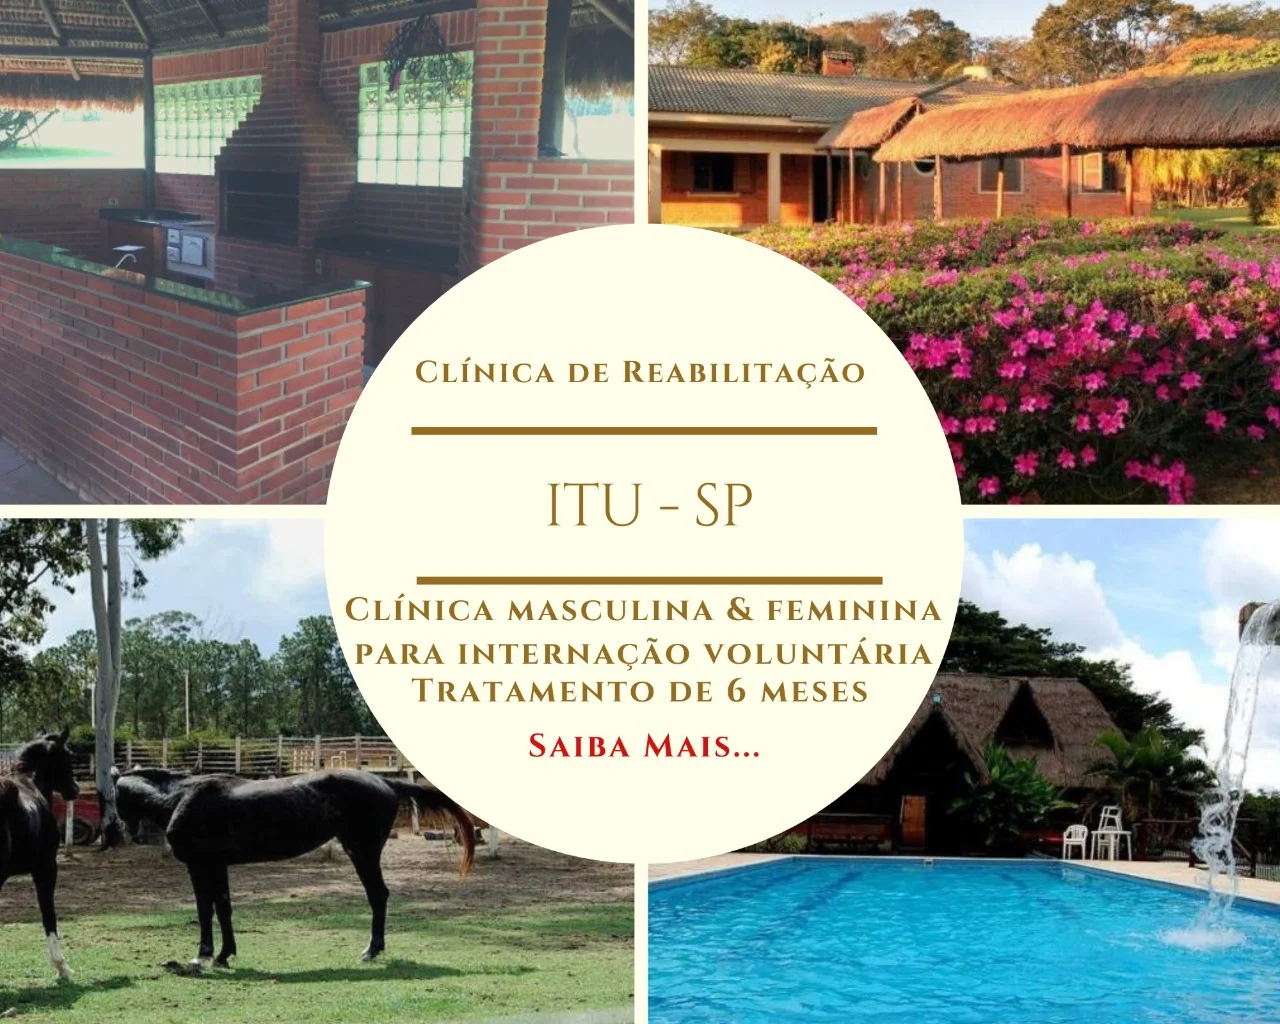 Clinica de recuperação em São Paulo